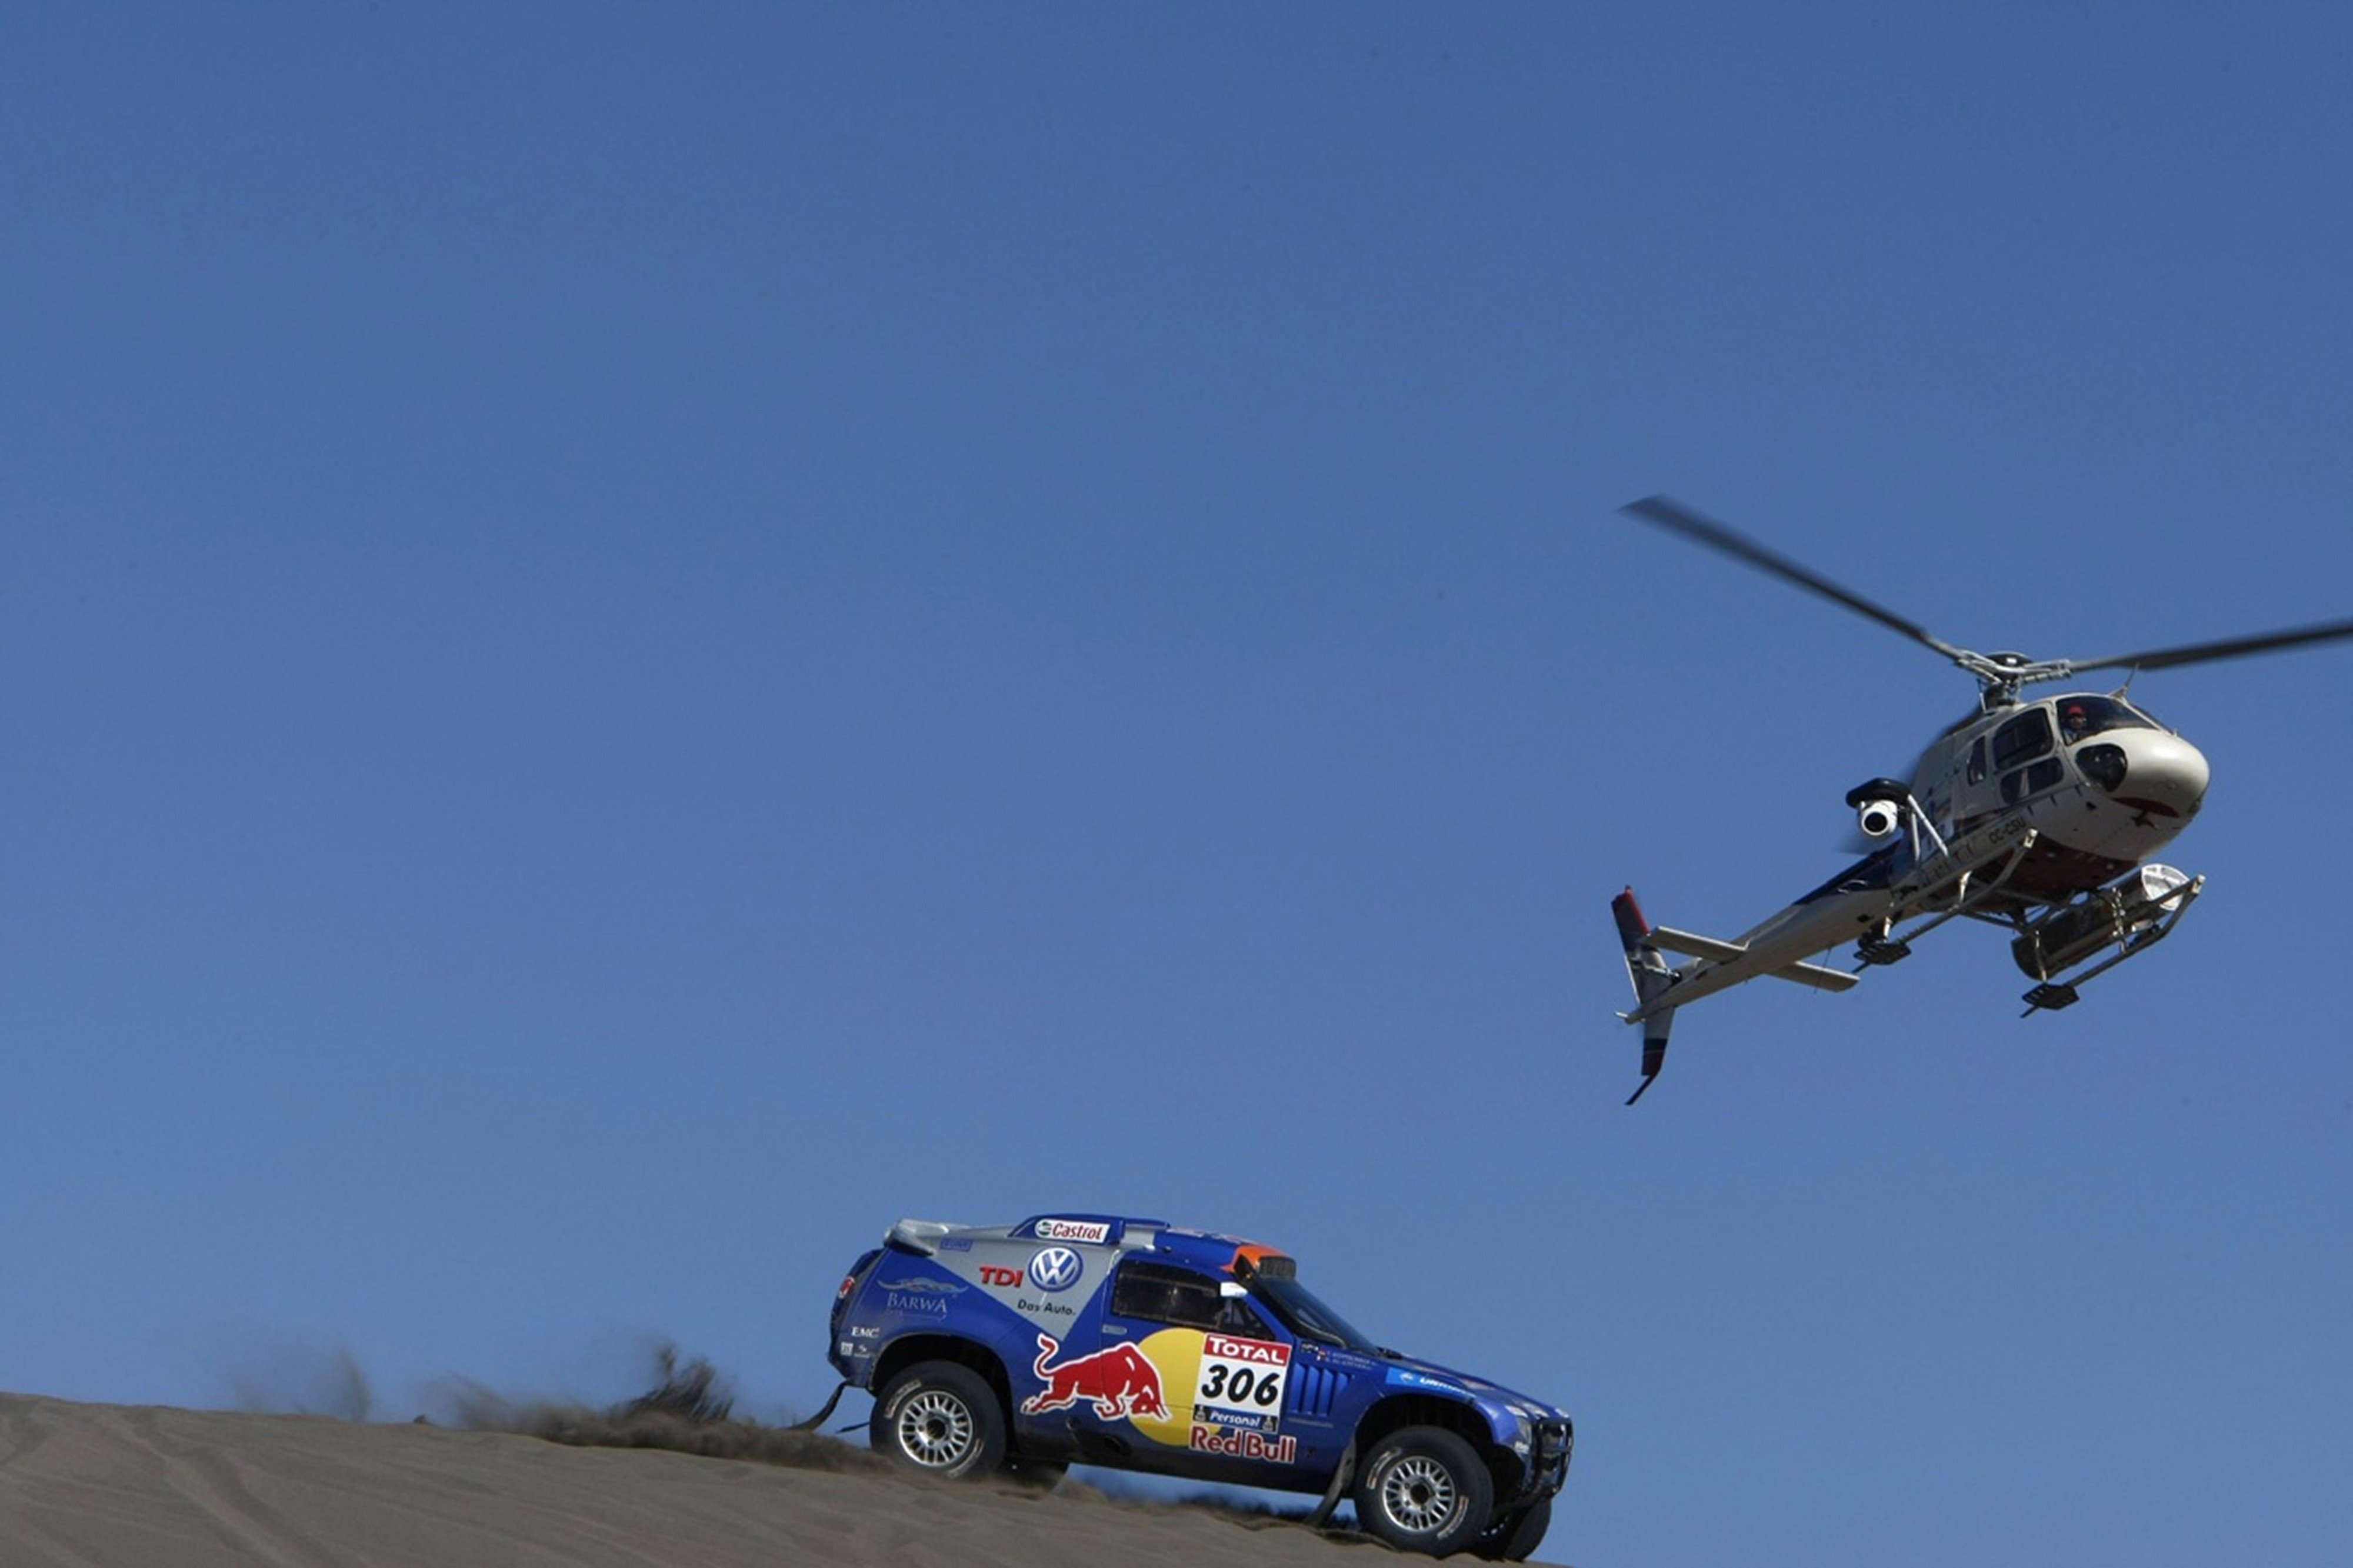 helicopter, Volkswagem, Rally, Touareg, Dakar, Race, 2010, Car, Desert, Racing, Sand, 4000x2666 Wallpaper